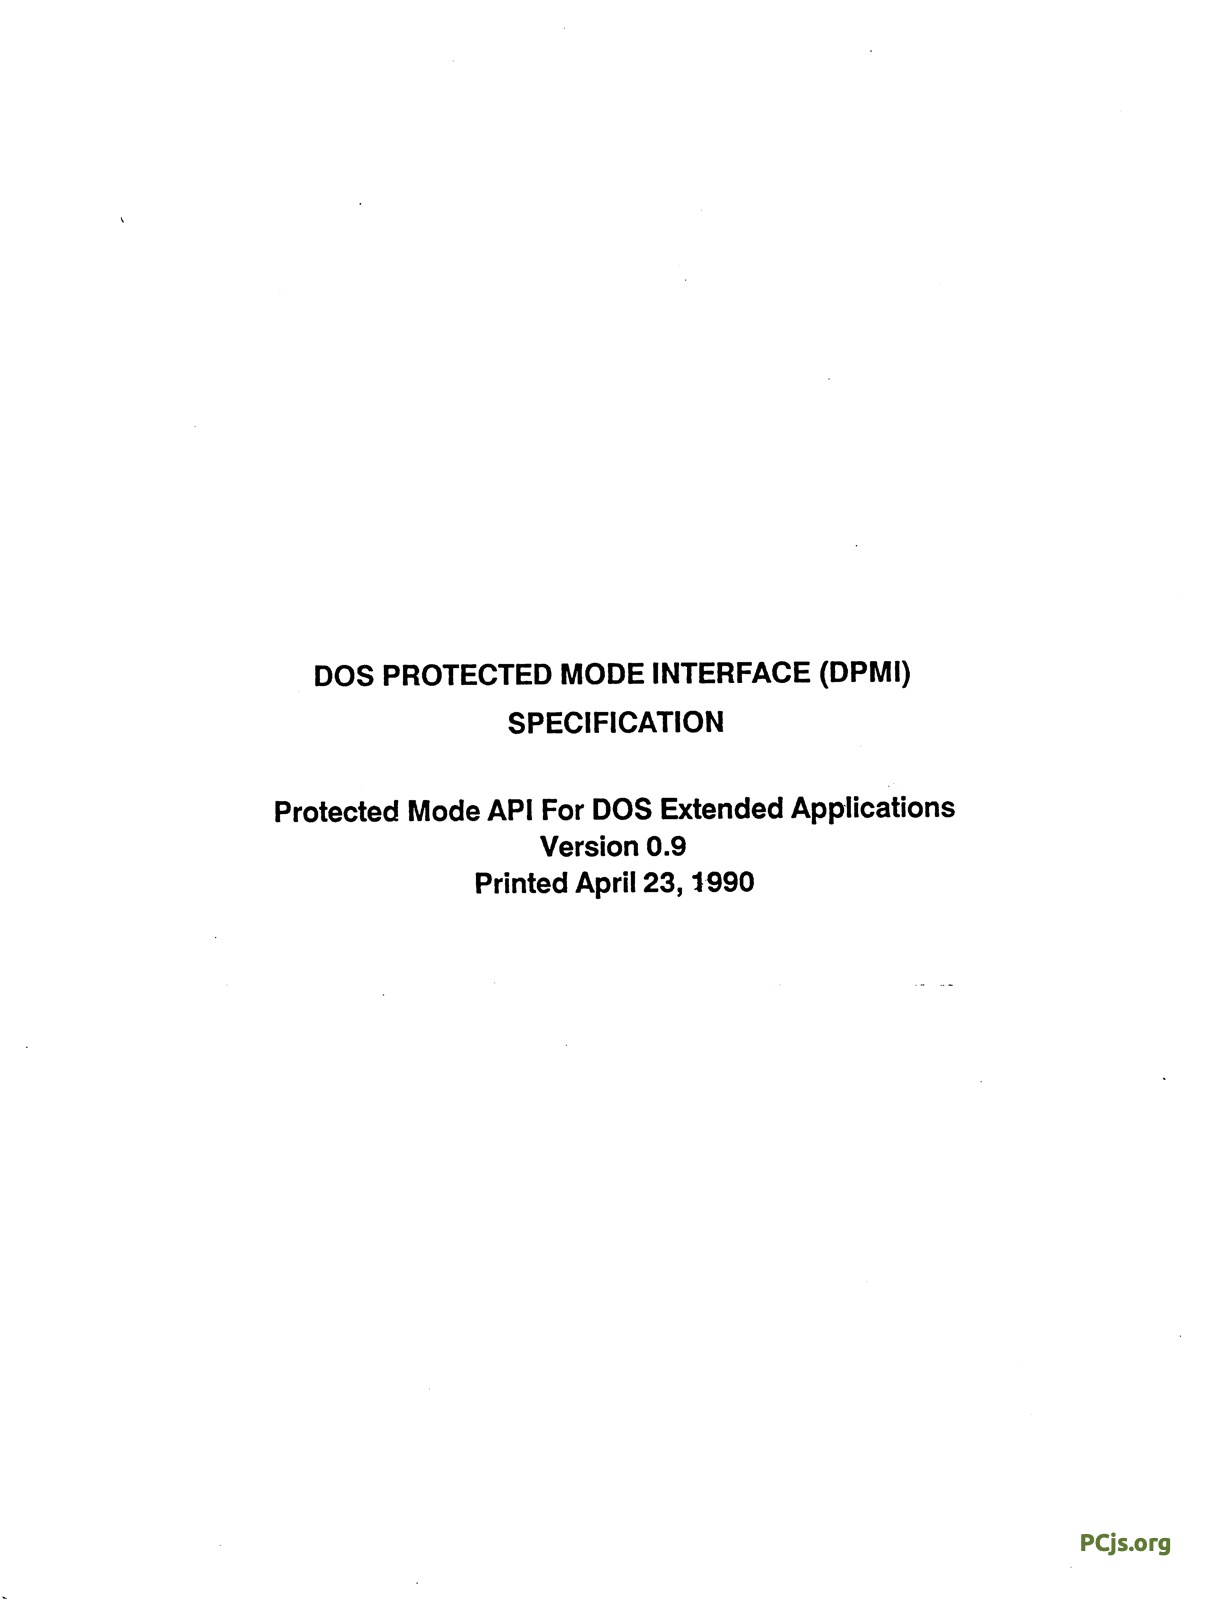 DPMI 0.9 (April 1990)